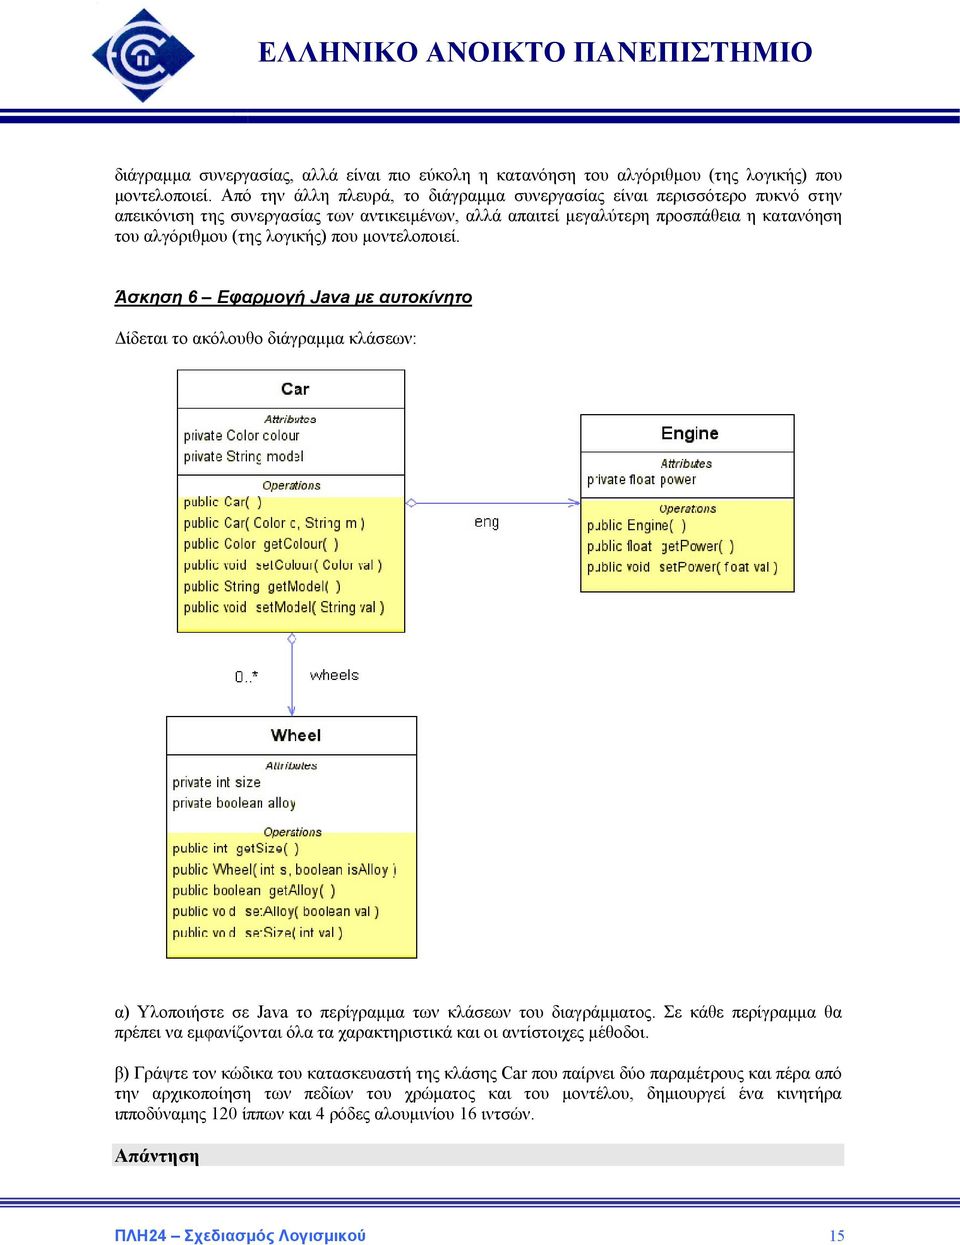 μοντελοποιεί. Άσκηση 6 Εφαρμογή Java με αυτοκίνητο Δίδεται το ακόλουθο διάγραμμα κλάσεων: α) Υλοποιήστε σε Java το περίγραμμα των κλάσεων του διαγράμματος.